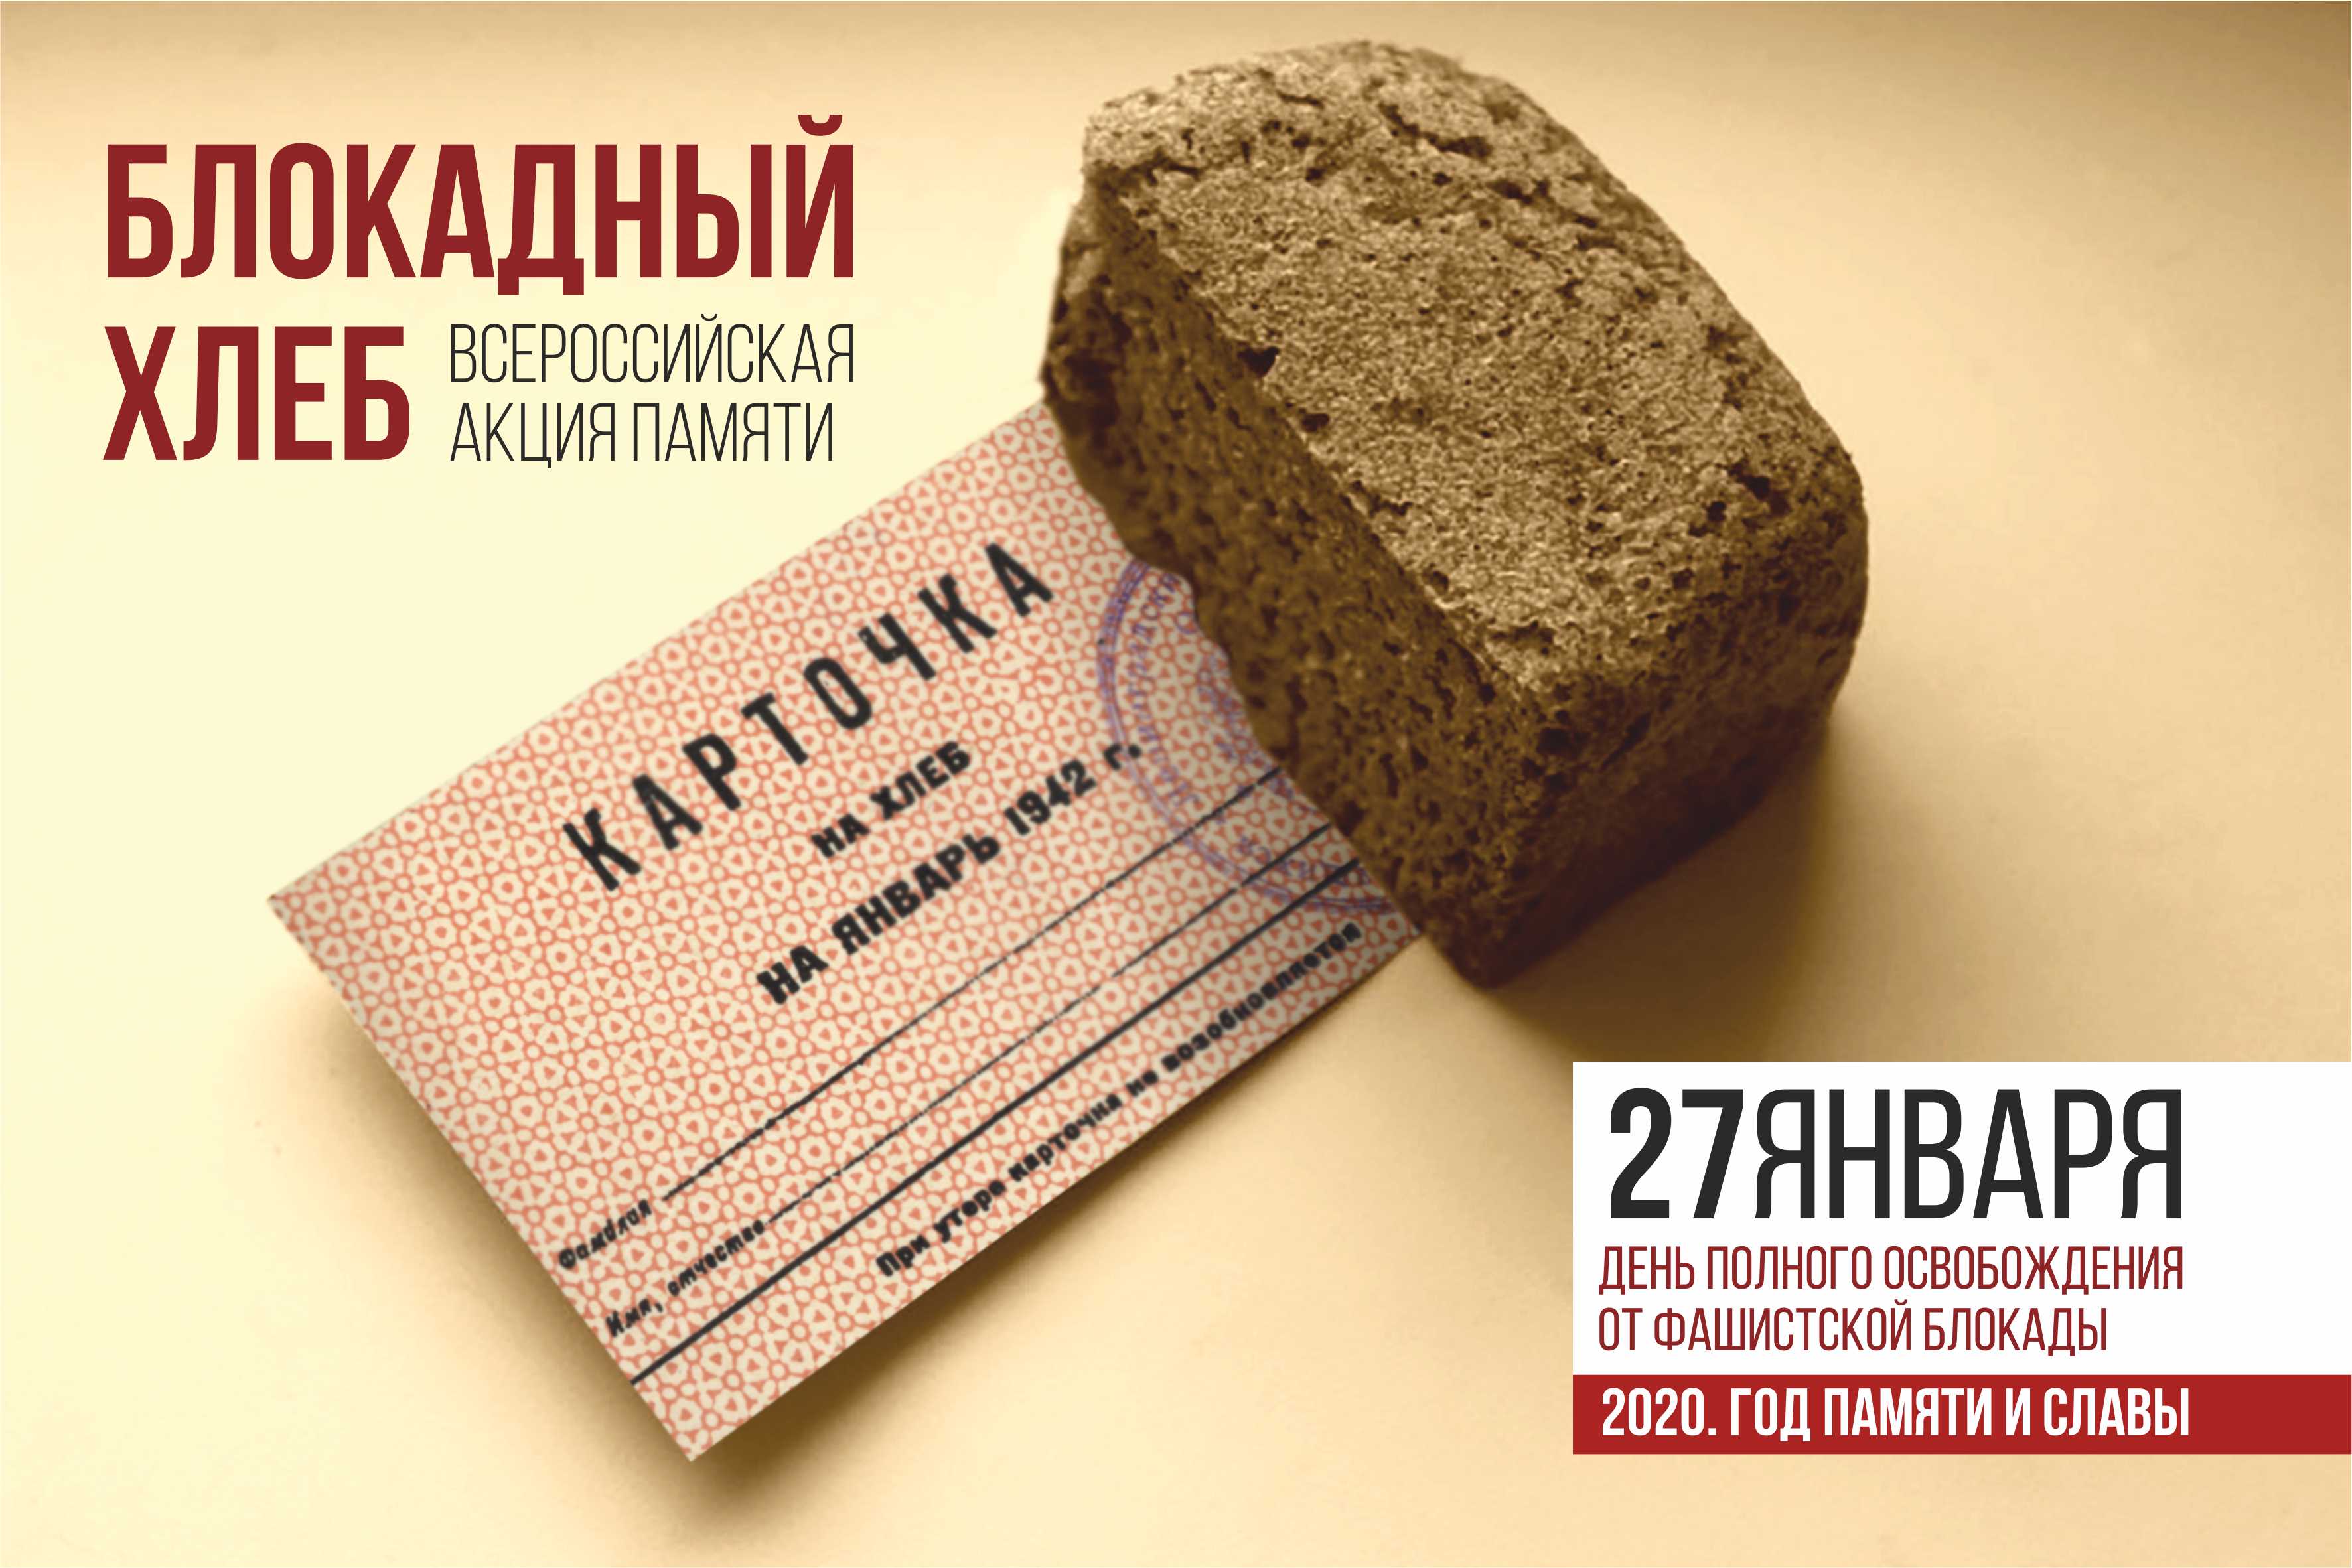 Более 350 тысяч школьников и студентов Кузбасса примут участие во Всероссийской акции памяти «Блокадный хлеб»